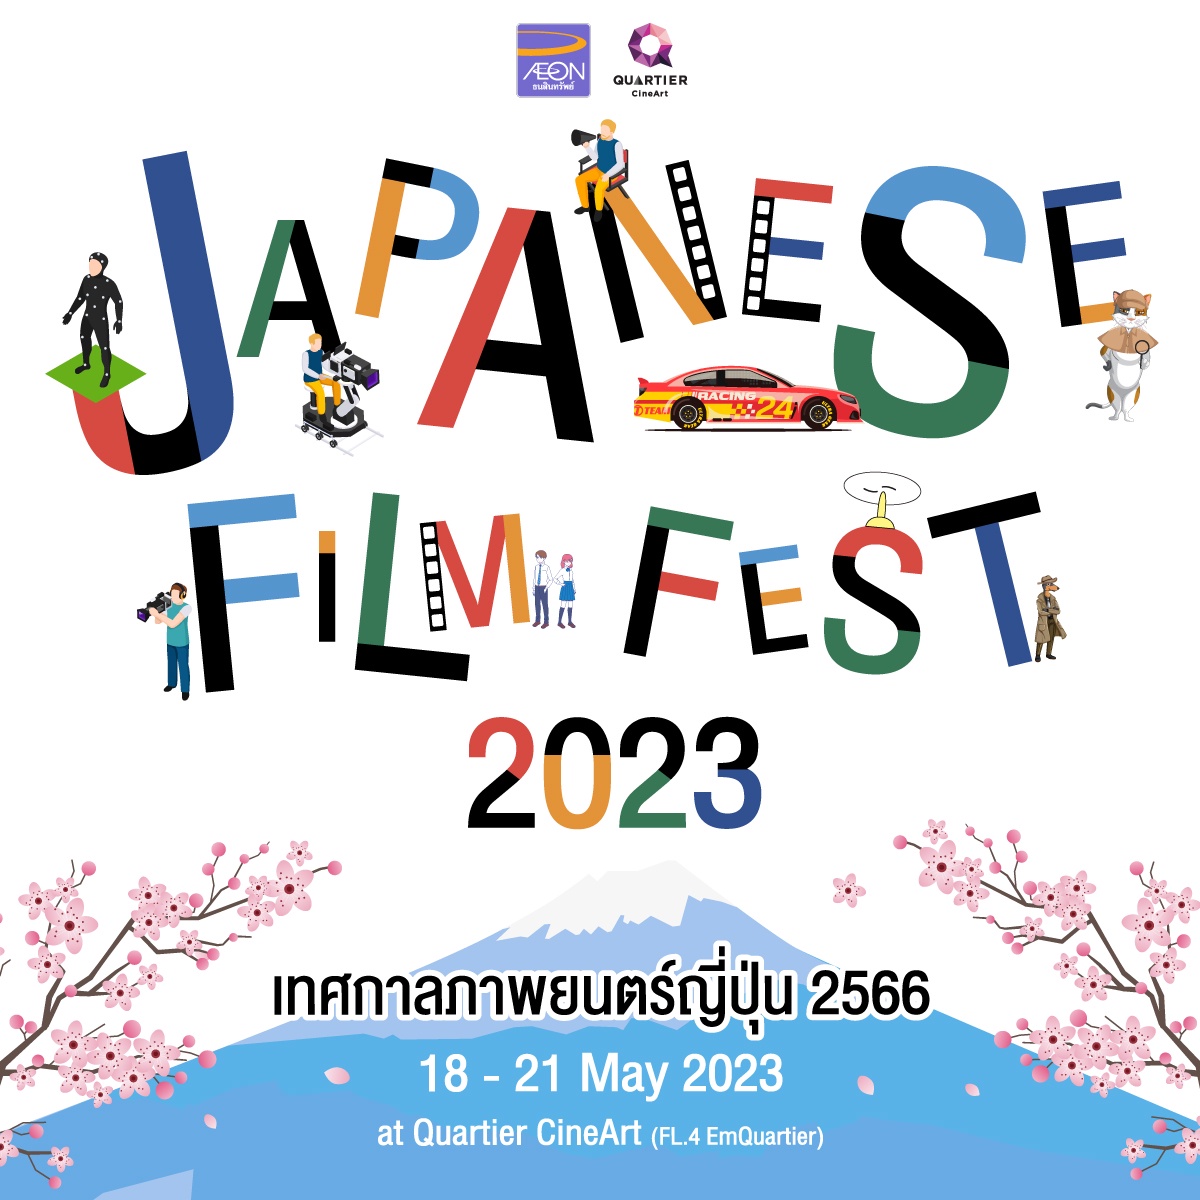 เมเจอร์ ซีนีเพล็กซ์ กรุ้ป ร่วมกับ อิออน จัดเทศกาลภาพยนตร์ญี่ปุ่น Japanese Film Fest 2023 คัดสรรหนังคุณภาพ 8 เรื่องครบรสให้ชมฟรี 18-21 พฤษภาคมนี้ ที่ ควอเทียร์ ซีเนอาร์ต